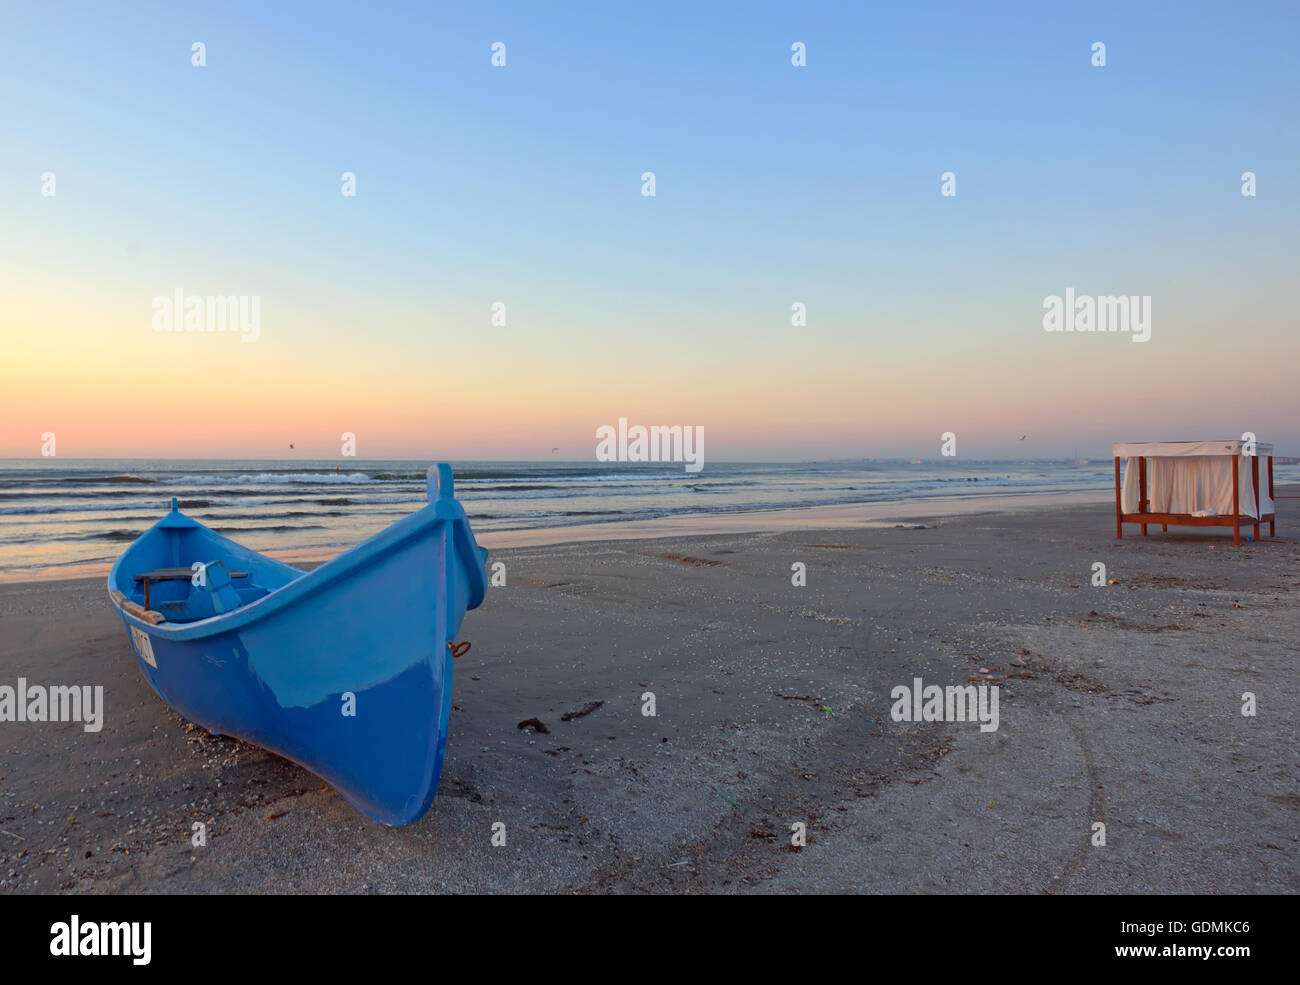 Amanecer en la playa con el barco azul Foto de stock